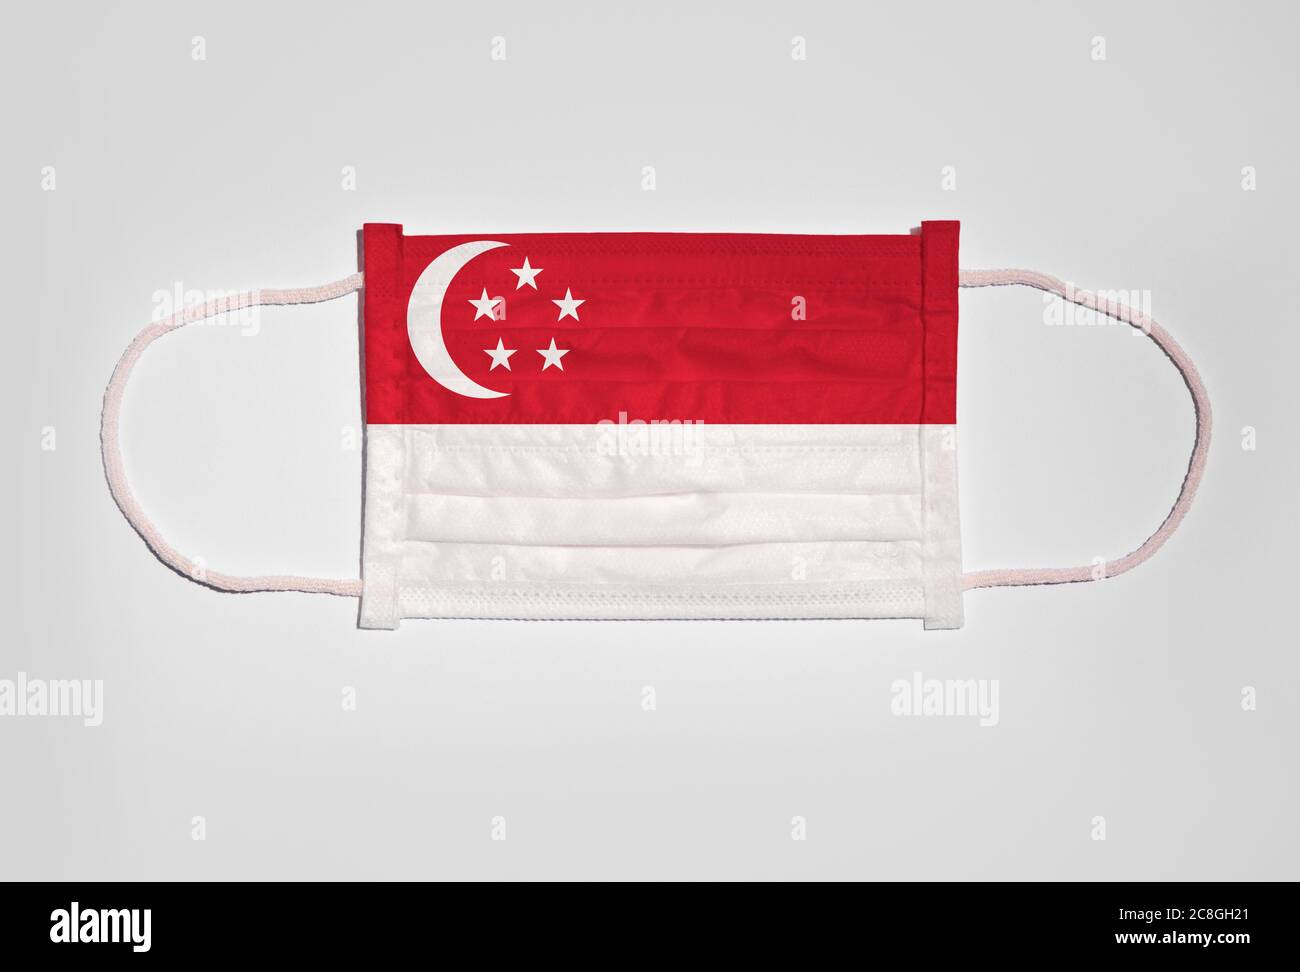 Immagine simbolo crisi corona, protezione della bocca, maschera respiratoria, bocca e protezione del naso con bandiera di Singapore, sfondo bianco Foto Stock